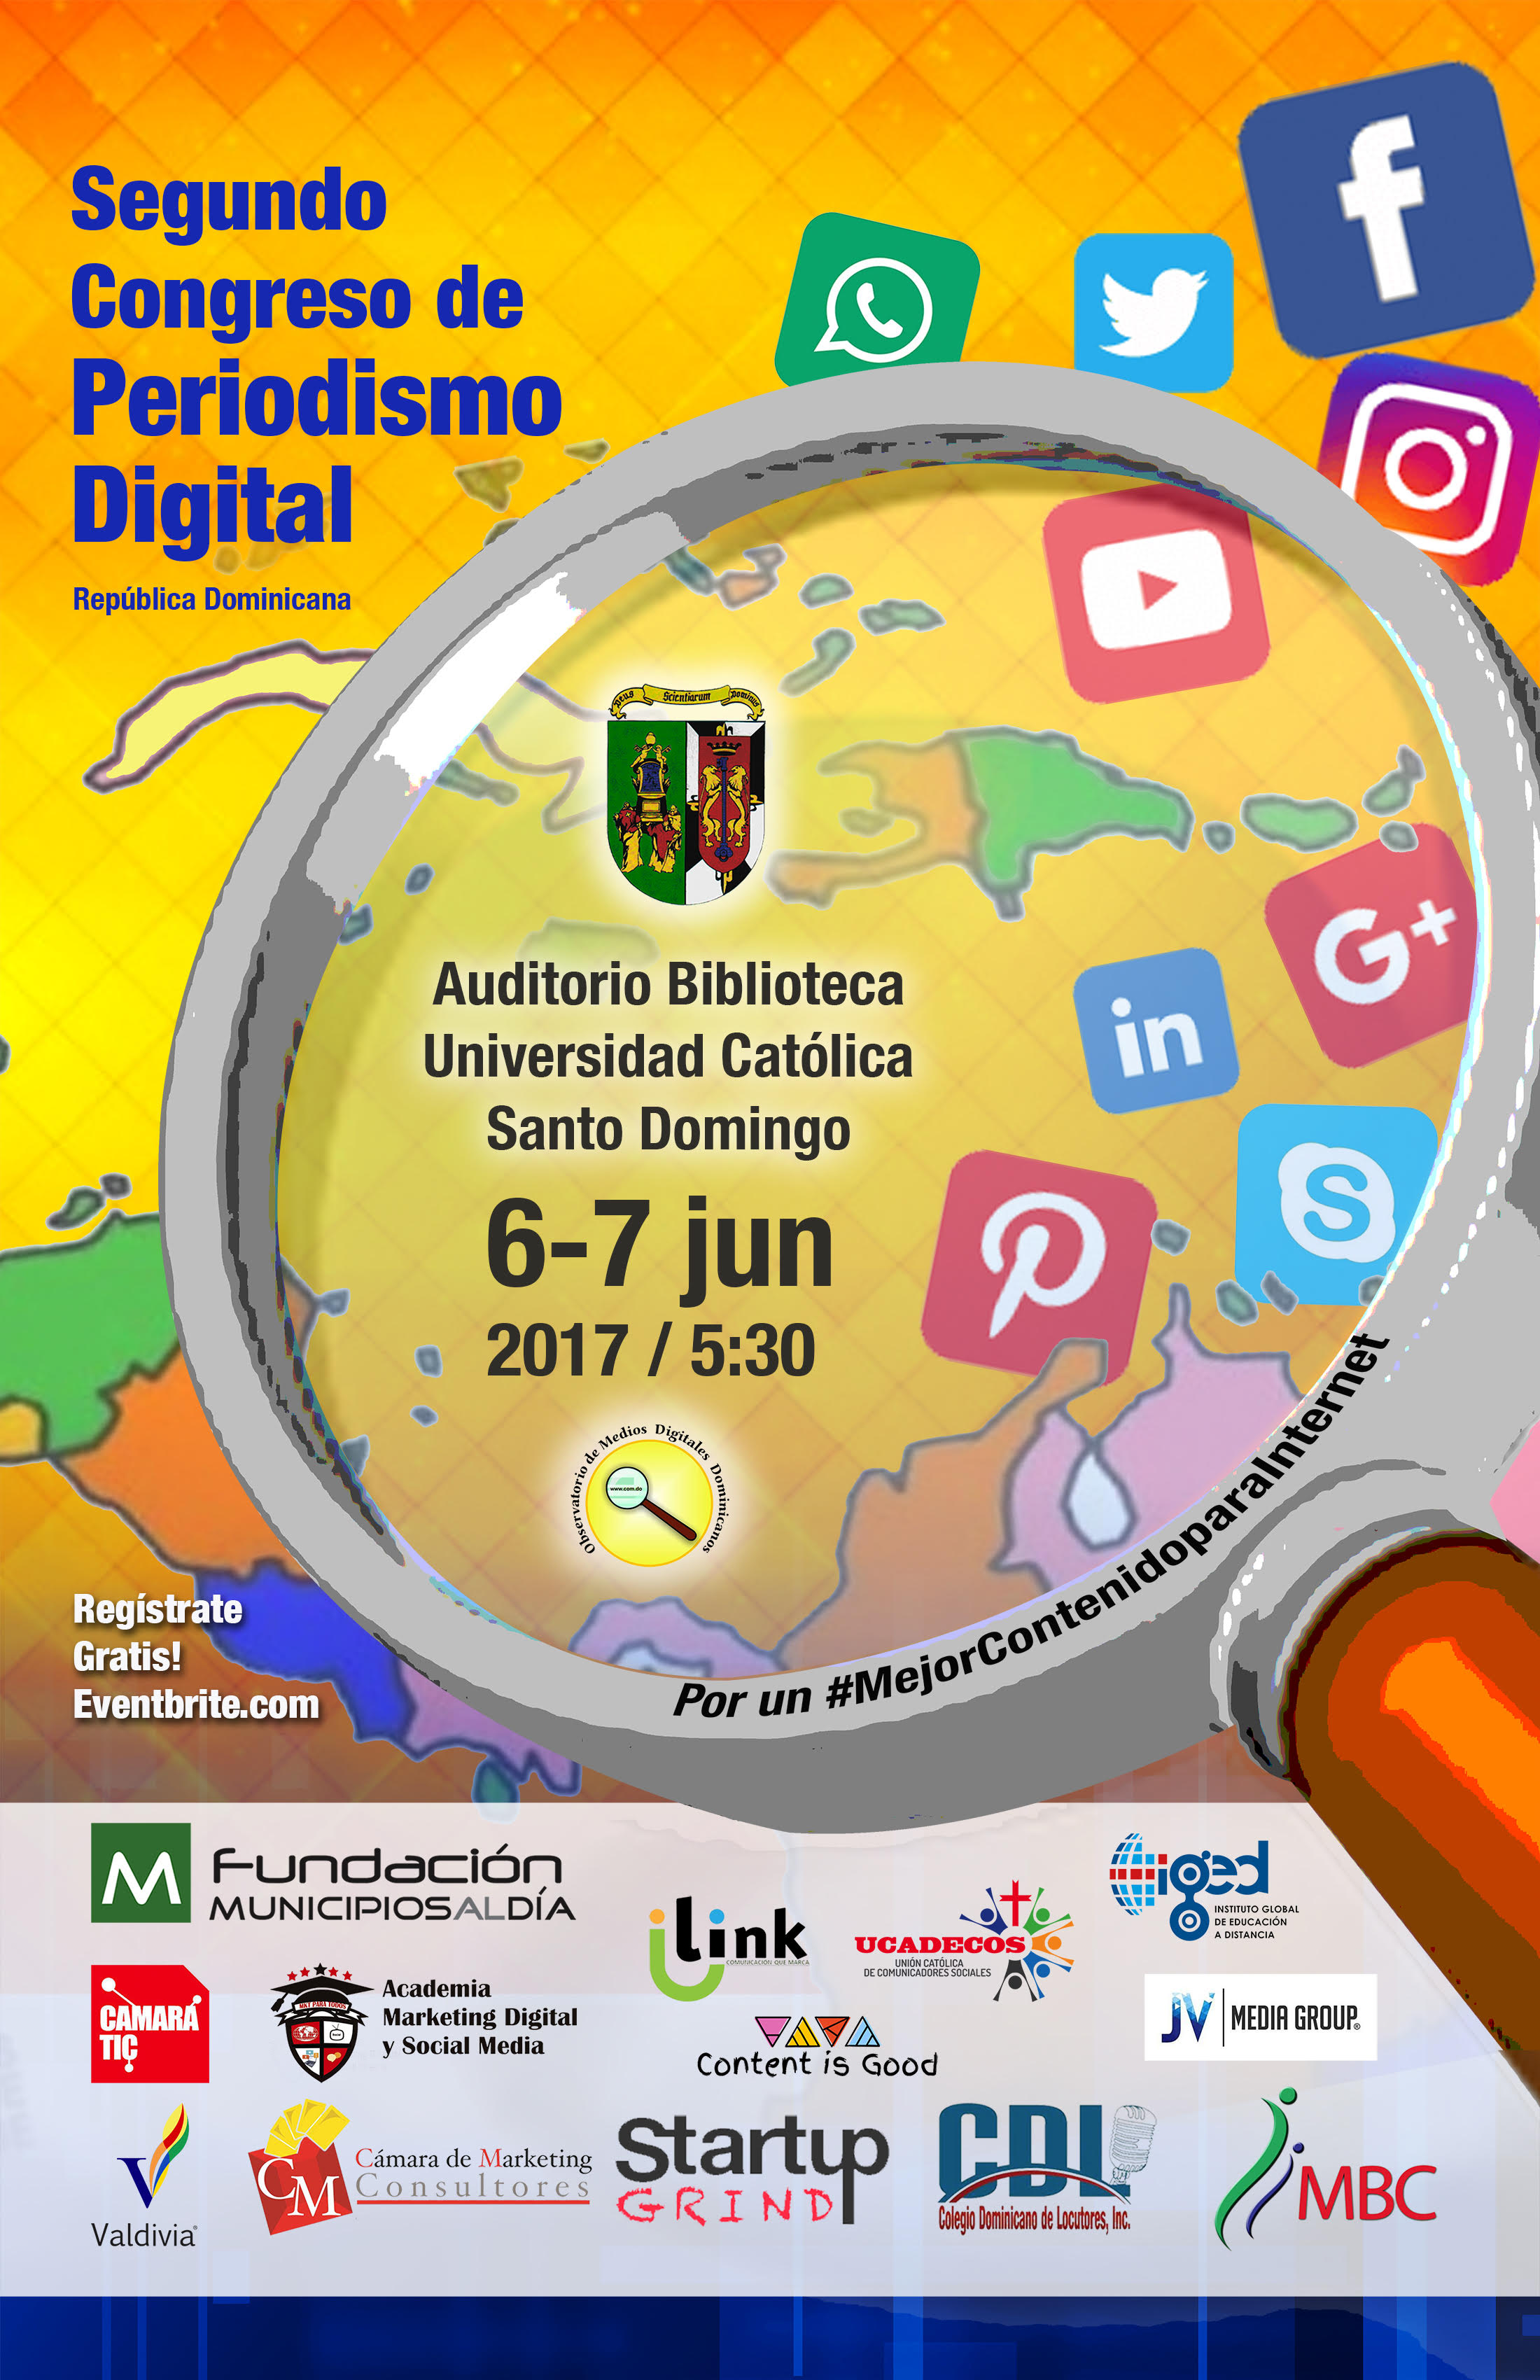  Observatorio celebrará II Congreso de Periodismo Digital el 6 y 7 de junio